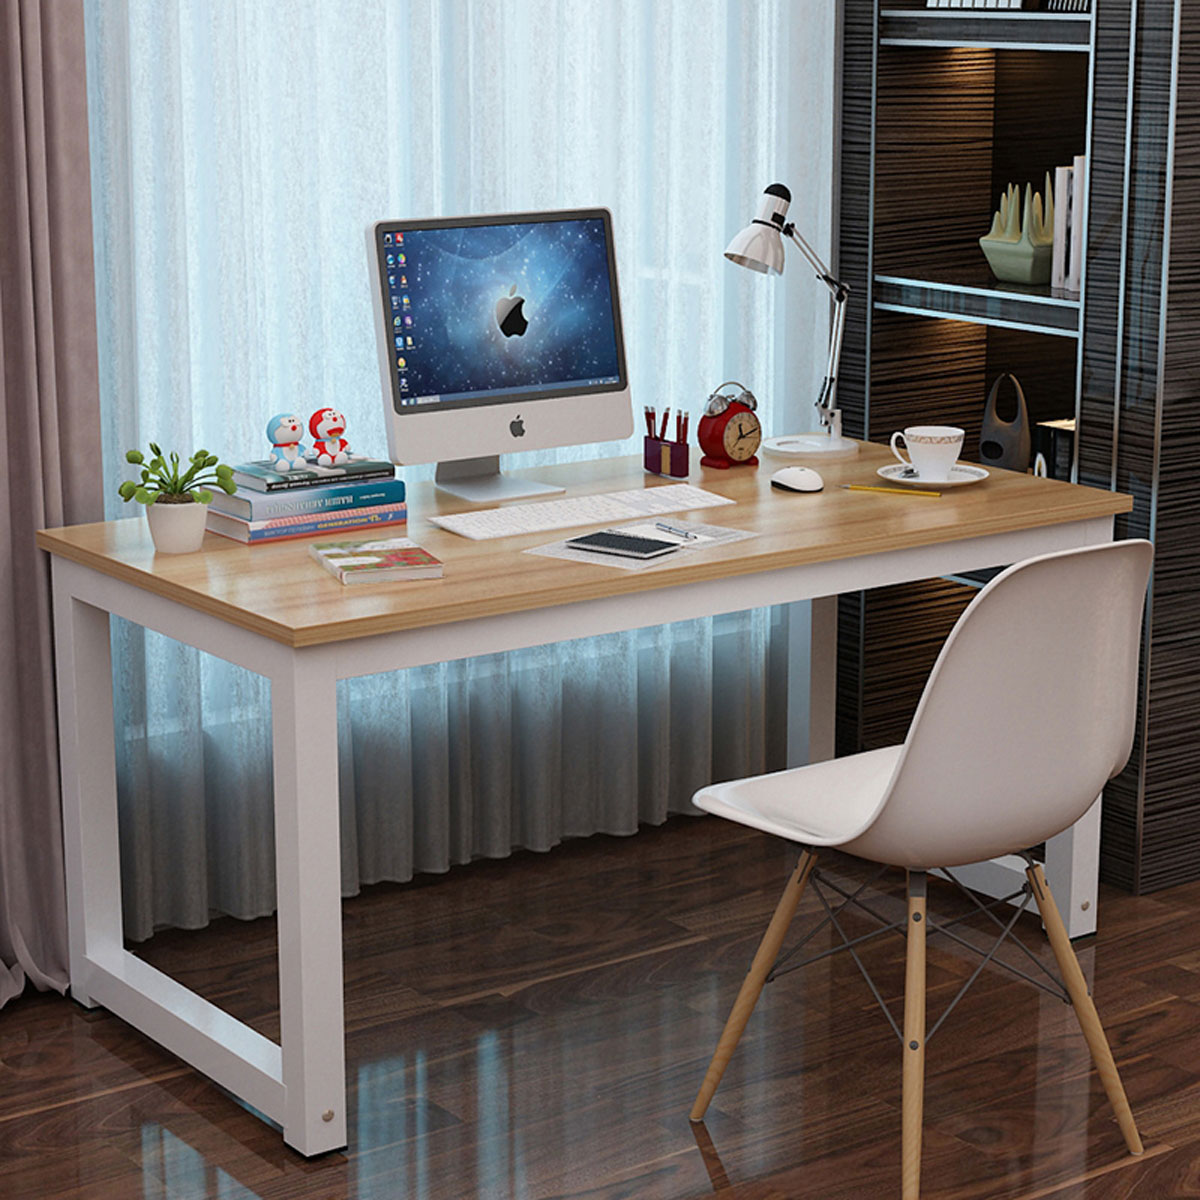 台式电脑桌家用简约现代笔记本电脑桌简易书桌书法写字台办公桌